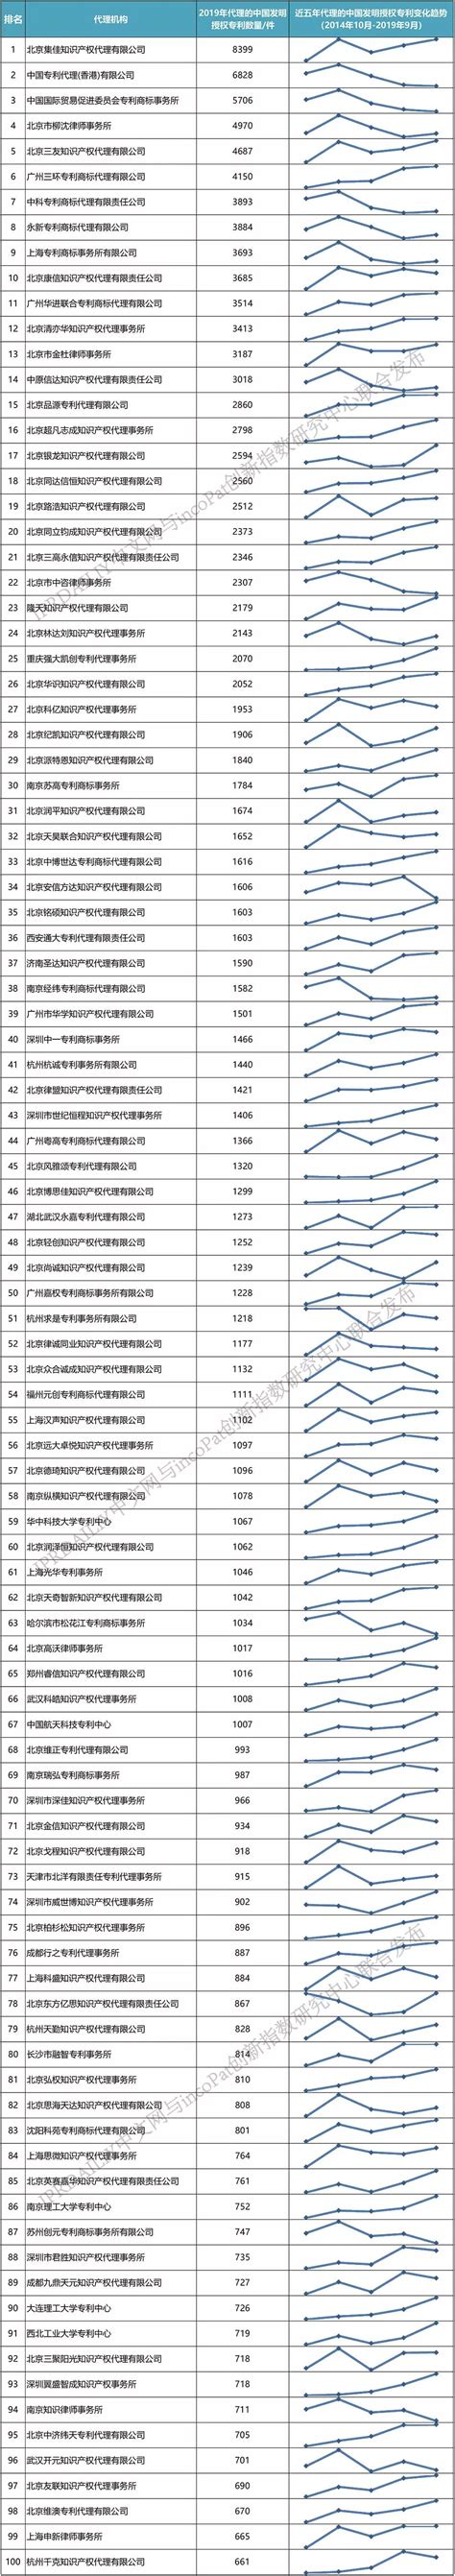 广州天河：2020年专利代理机构及分支机构增长超60%